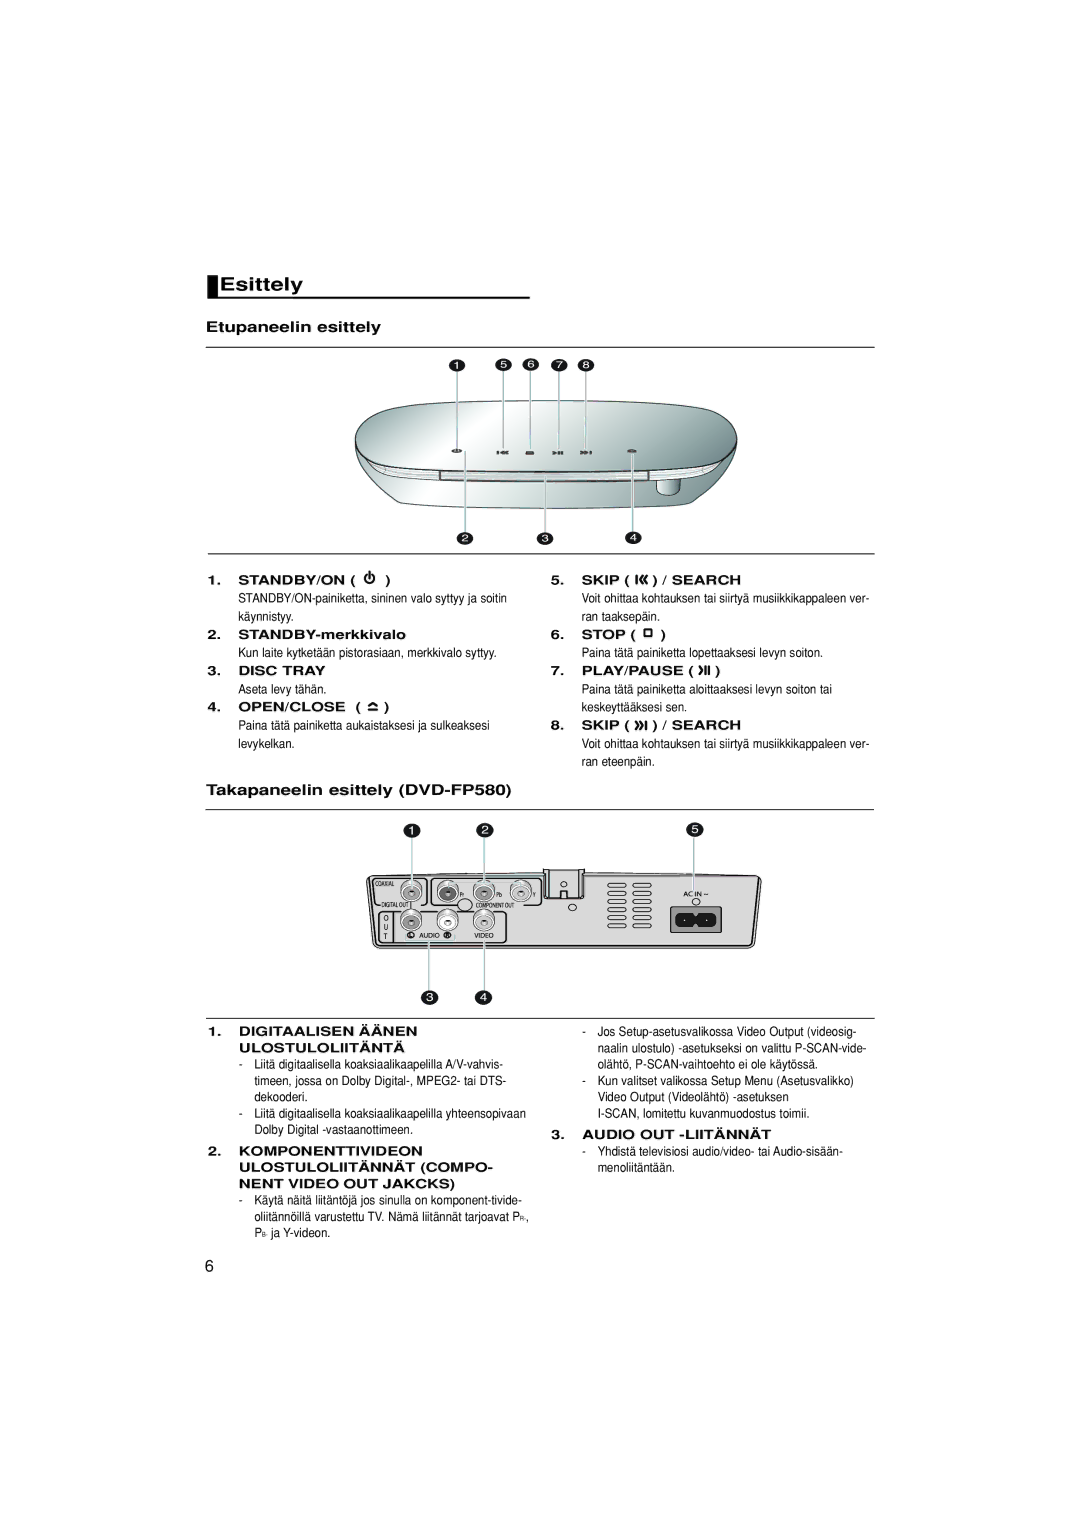 Samsung DVD-F1080W/XEE manual Esittely, Etupaneelin esittely, Takapaneelin esittely DVD-FP580, Audio OUT -LIITÄNNÄT 